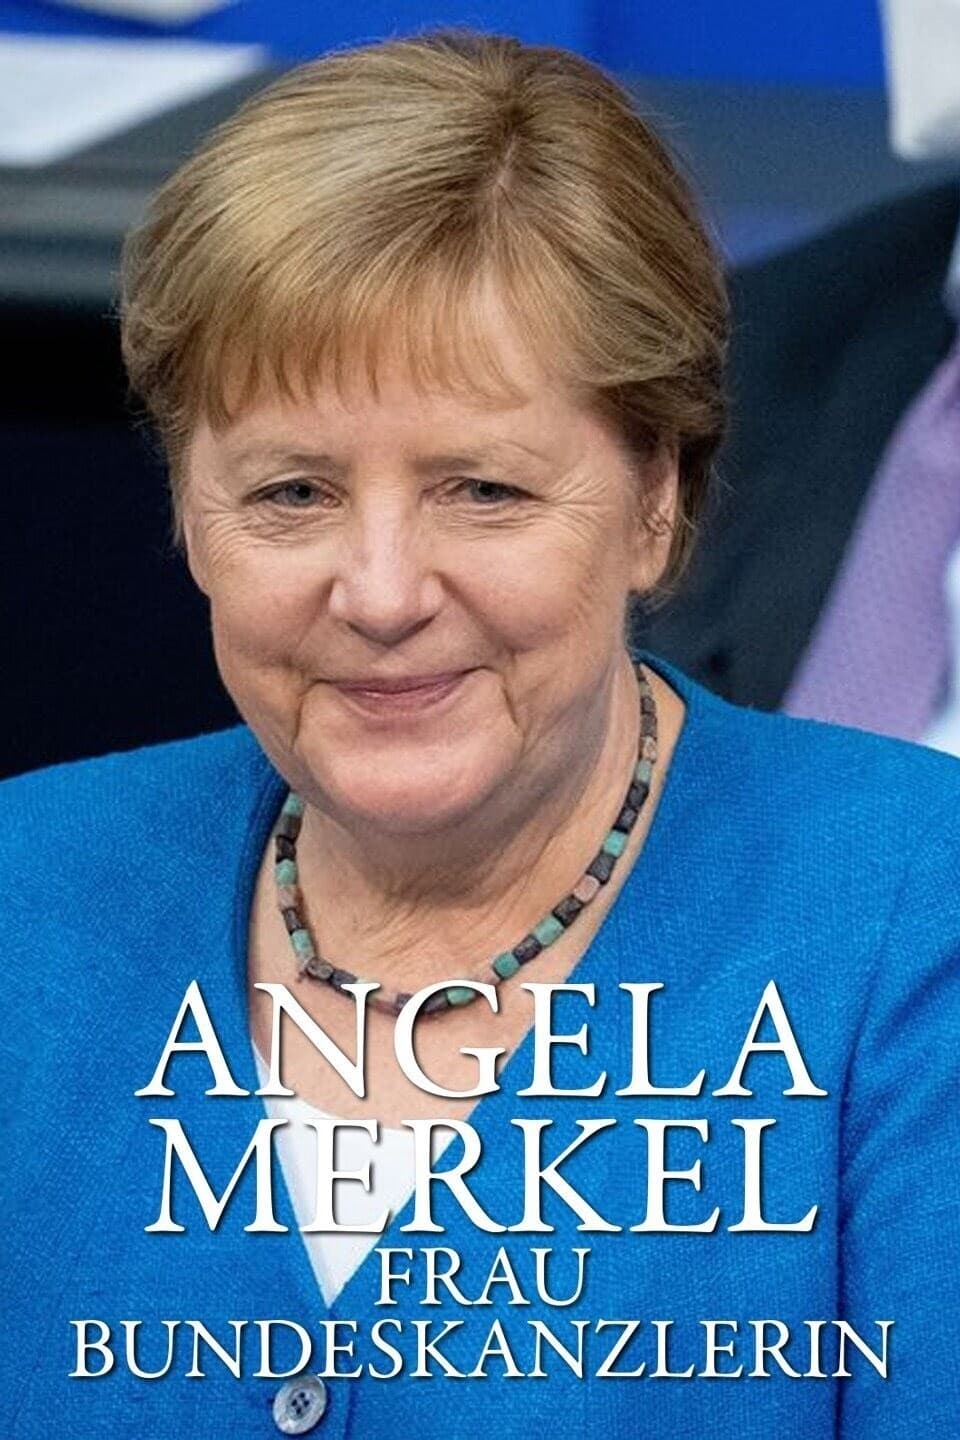 Angela Merkel – Frau Bundeskanzlerin